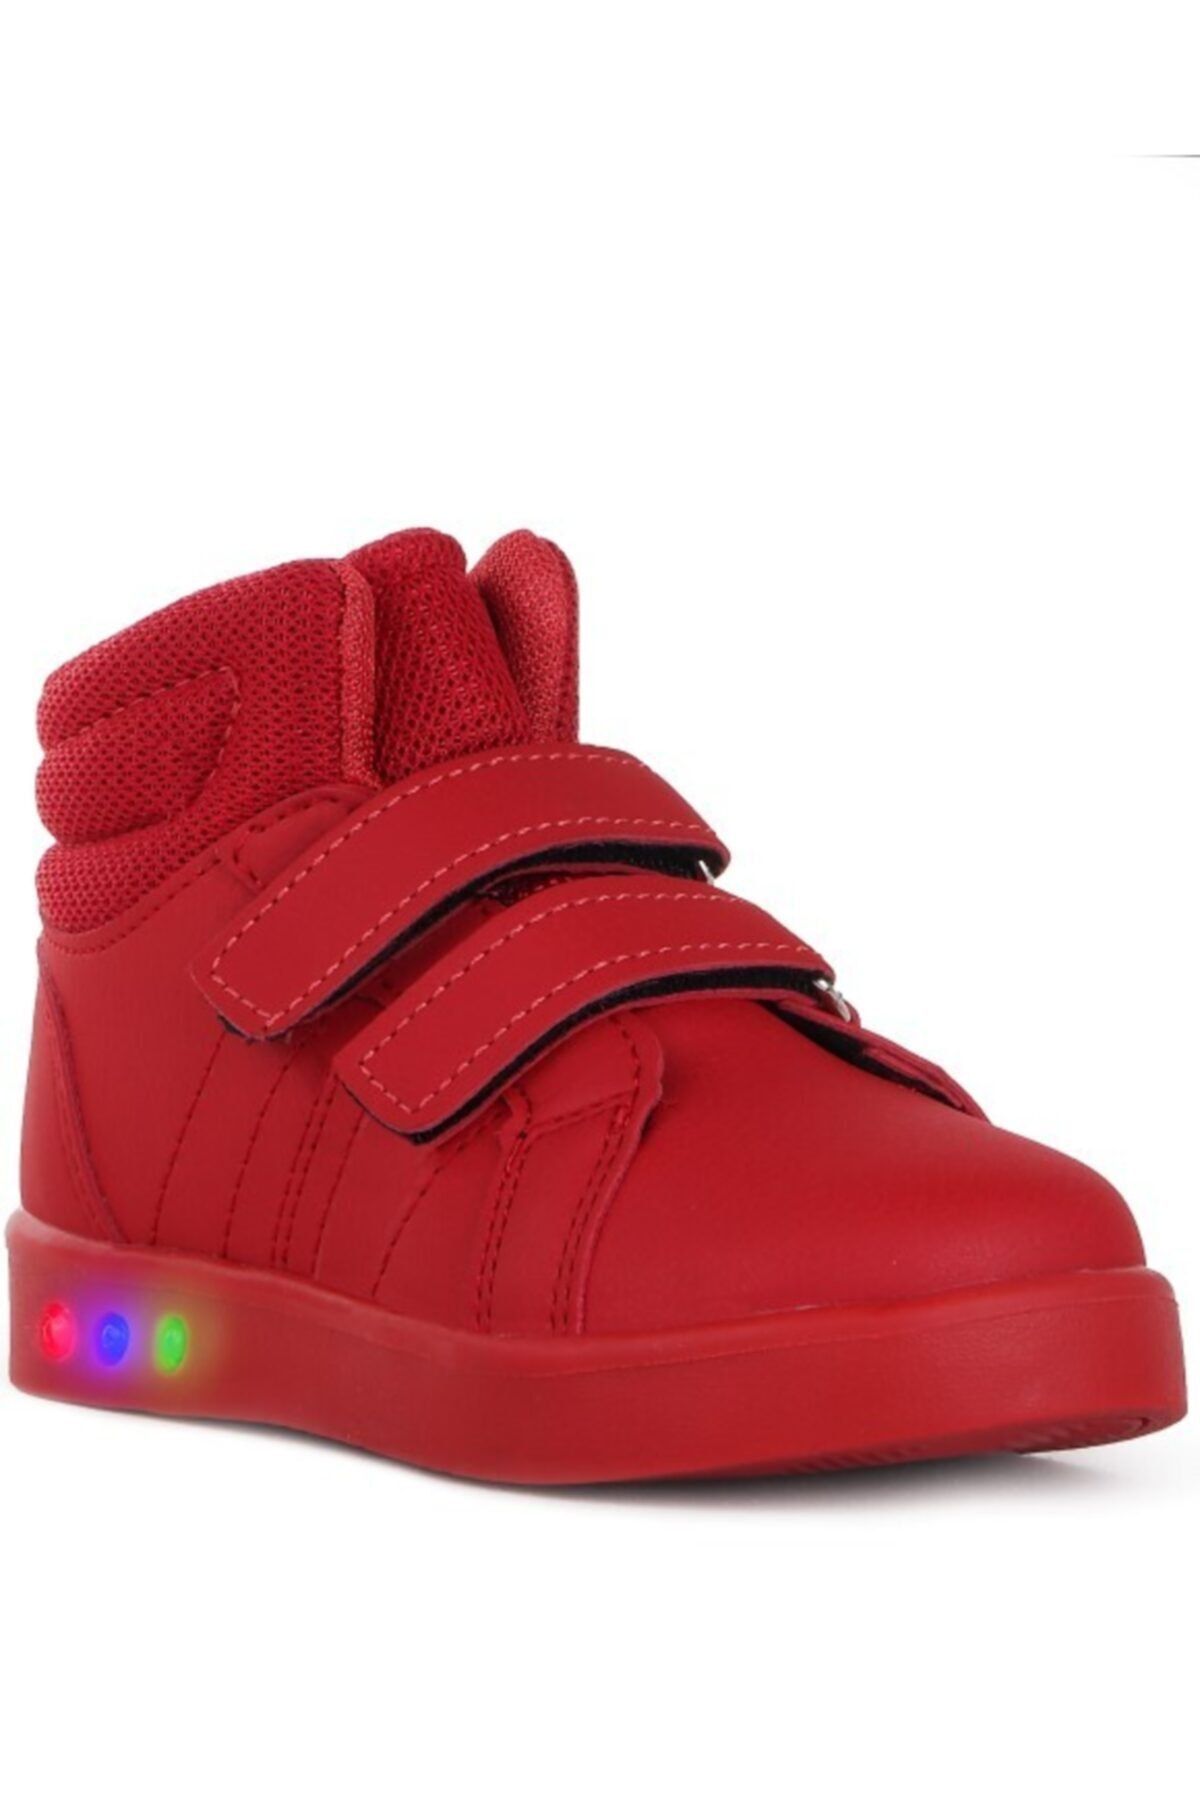 Cool Unisex Bebek Kırmızı Vojo 19-k27 4136 Bilekli Işıklı  Spor Ayakkabısı